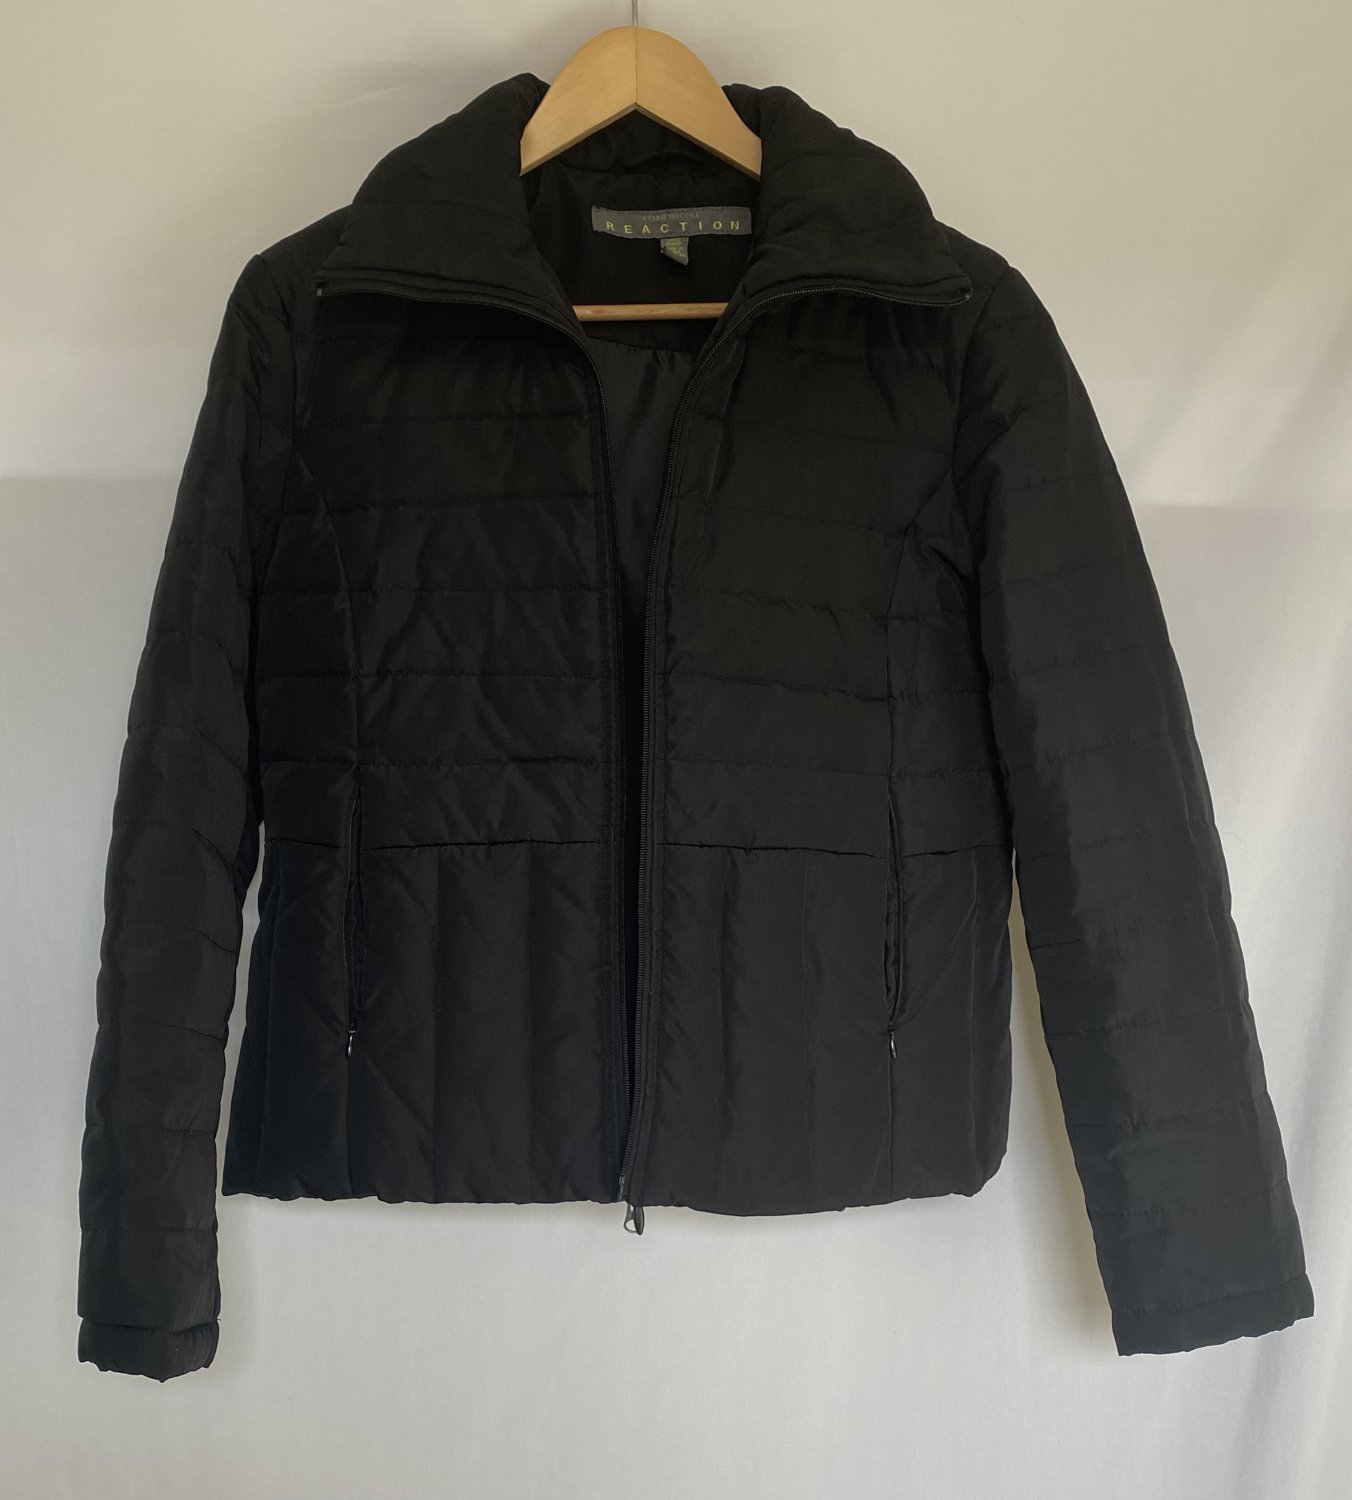 Ladies Kenneth Cole Reaction Size Large Black Jacket/Coat - Like New